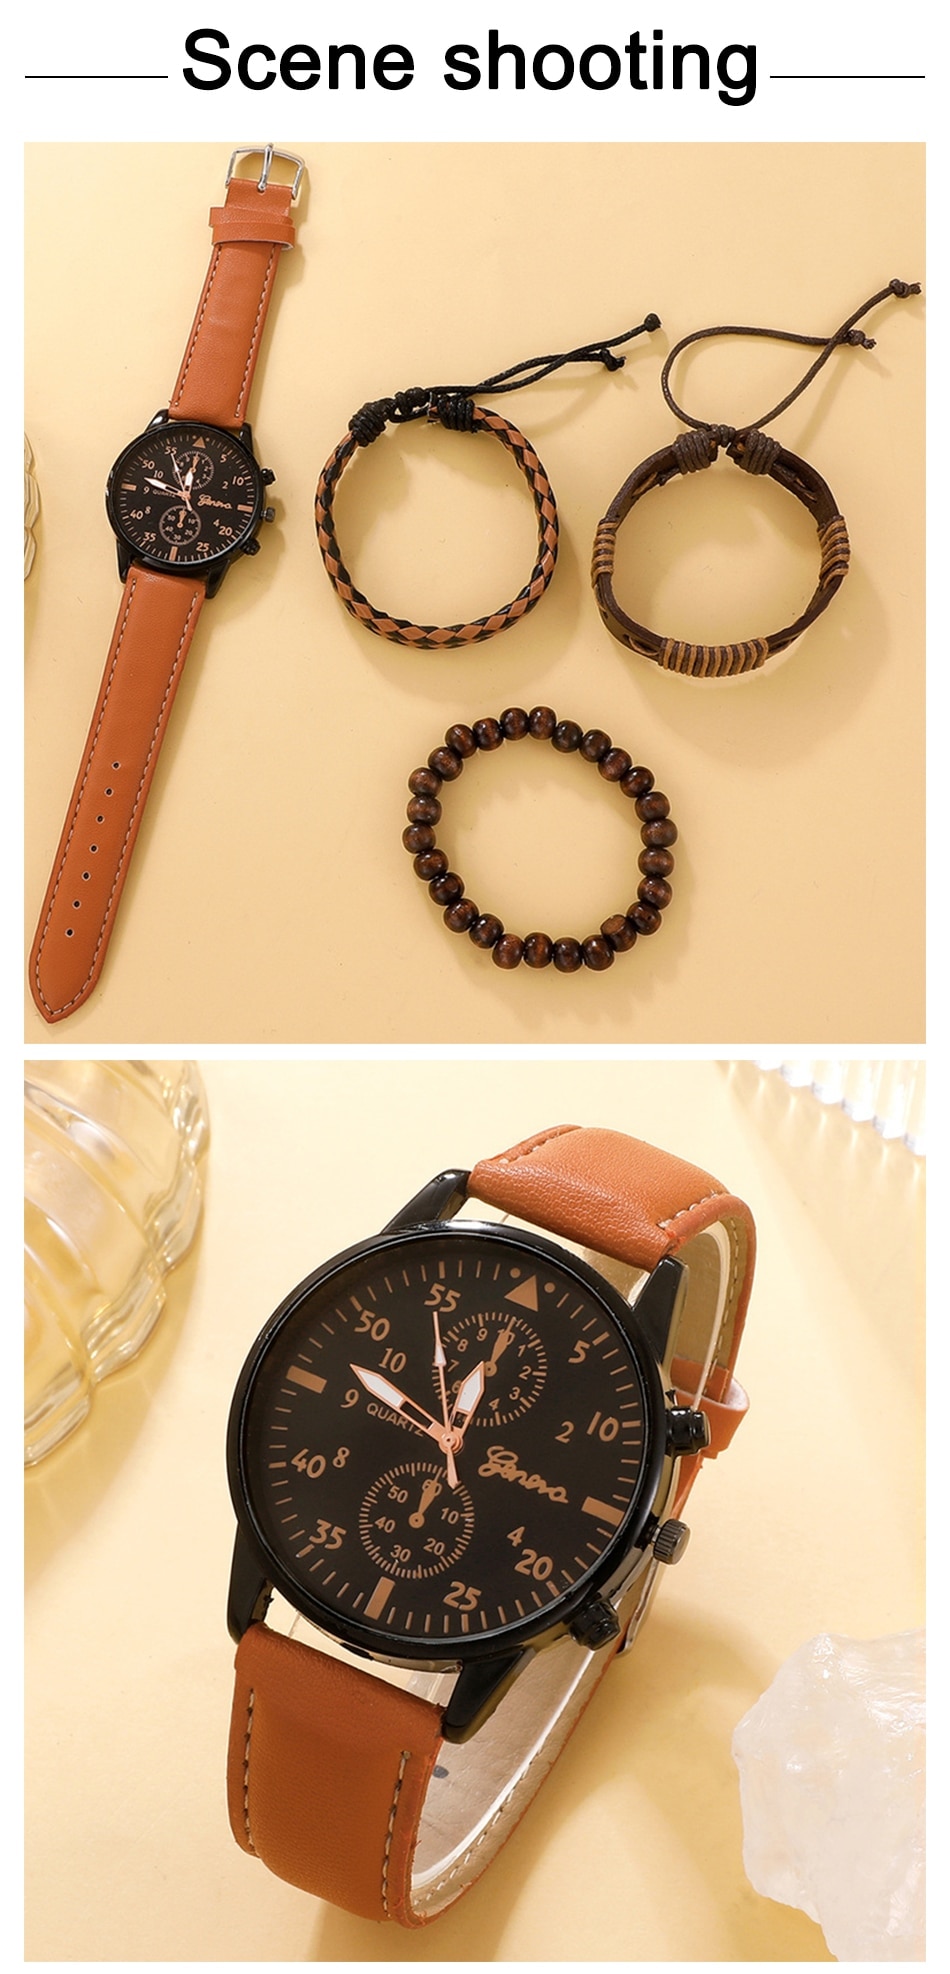 Nuevo reloj de pulsera de lujo para hombre, reloj de pulsera de cuarzo de cuero marrón a la moda de negocios, juego de regalo de Relogio Masculino